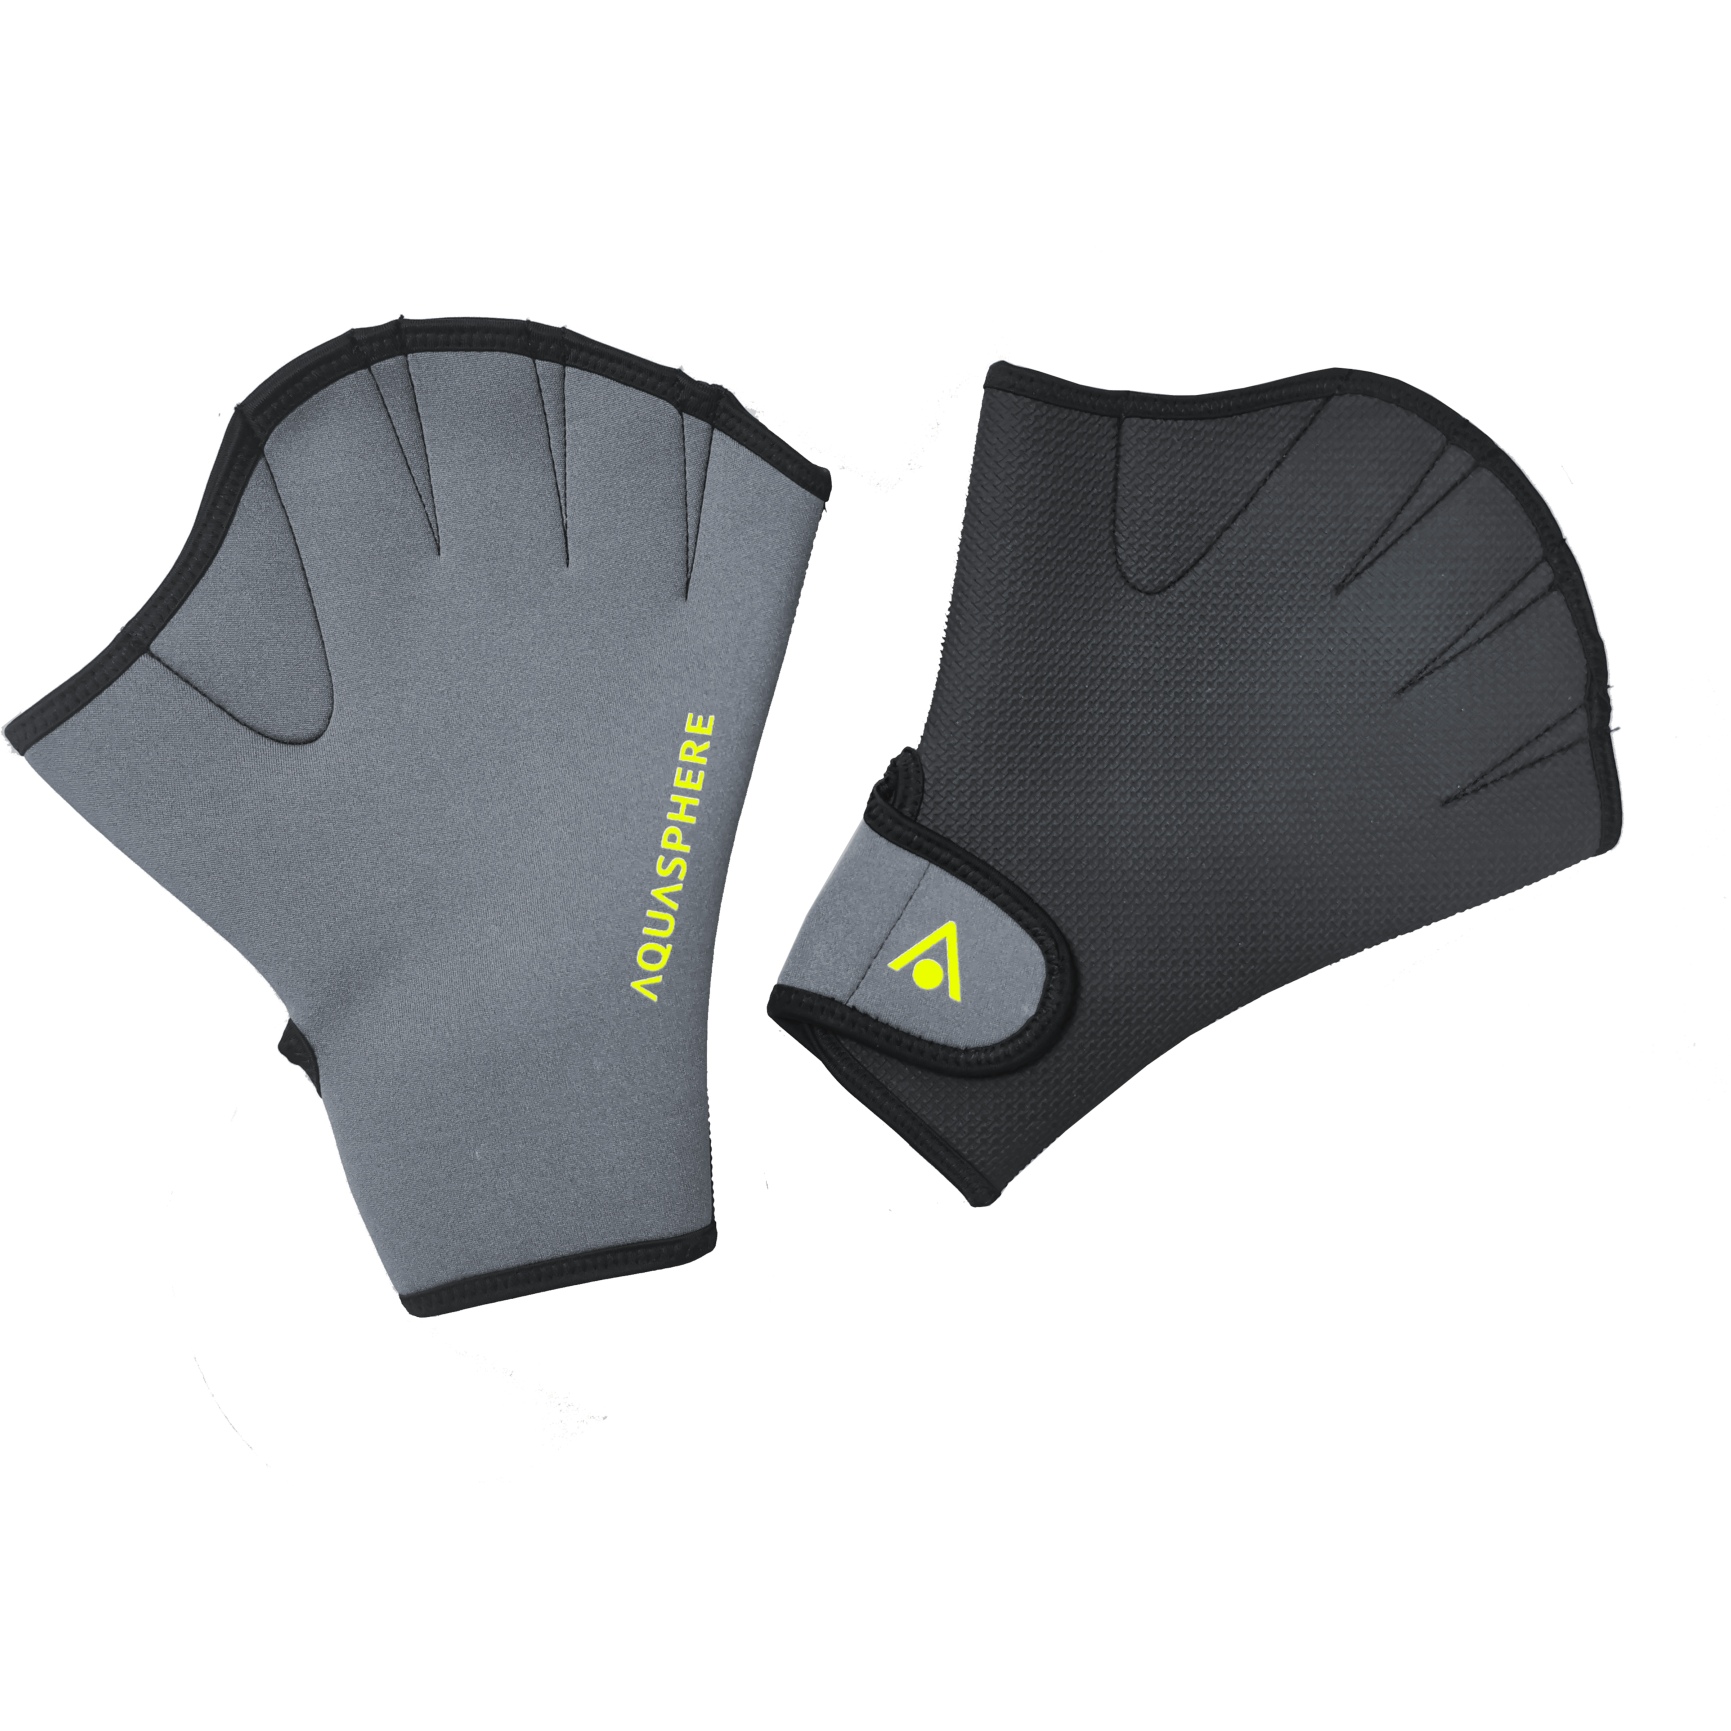 Produktbild von AQUASPHERE Swim Gloves Schwimmhandschuhe - Black/Bright Yellow